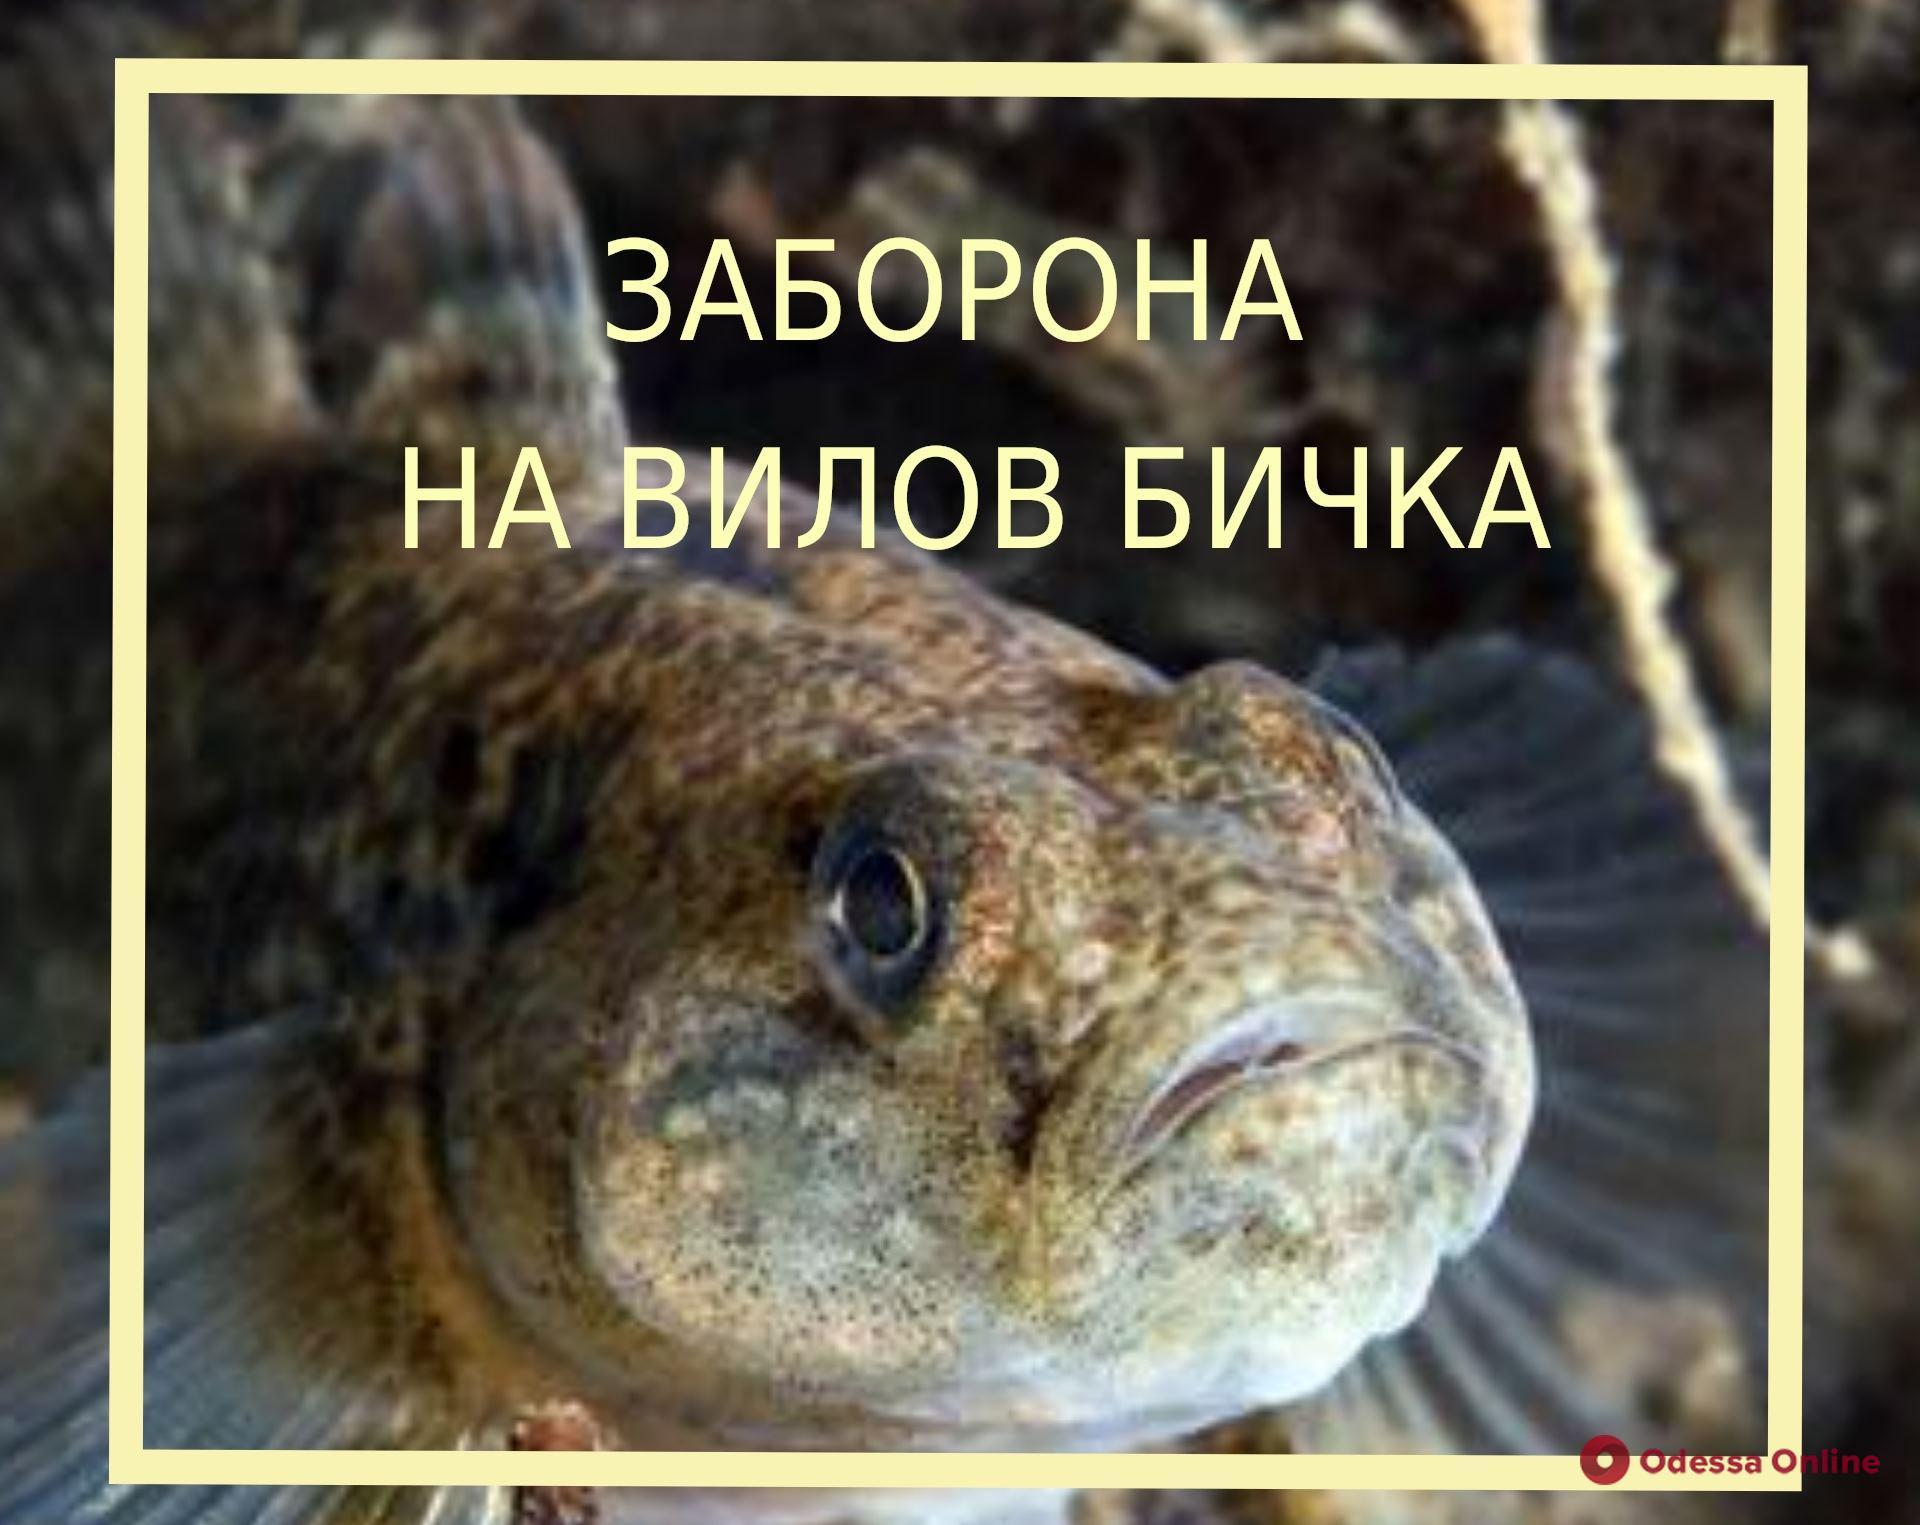 С 1 мая в Одесской области вводится запрет на вылов бычка